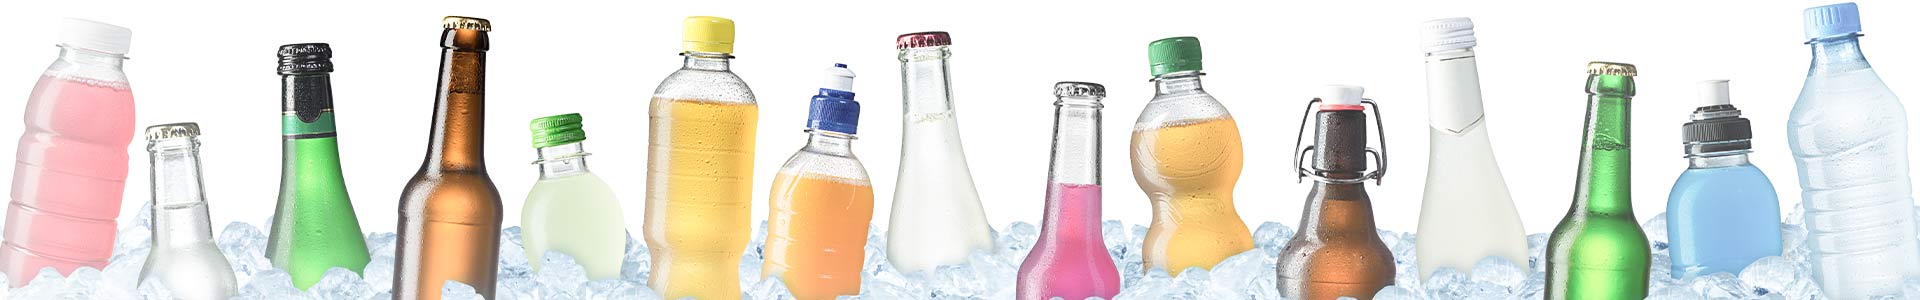 Getränkekühlschränke & Flaschenkühlschränke, Jetzt günstig kaufen